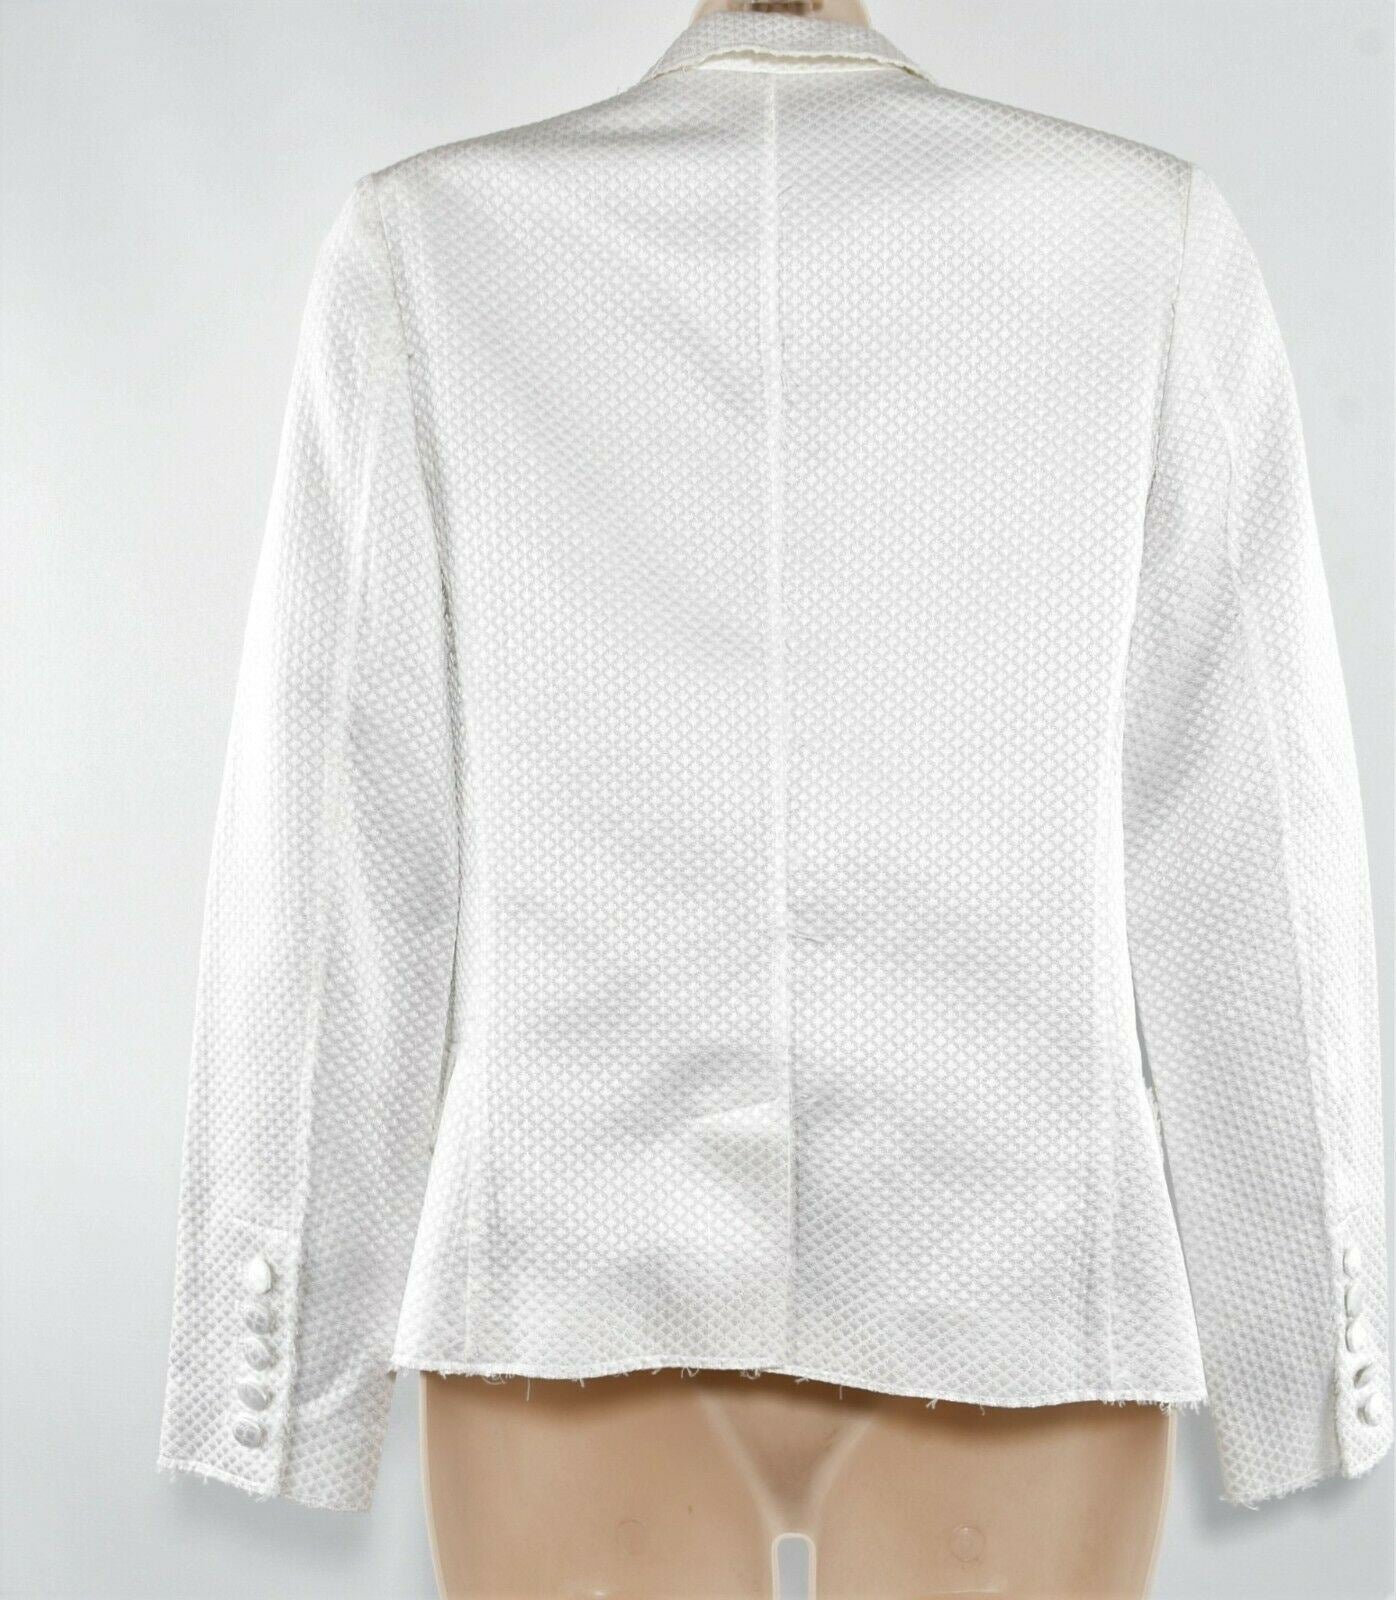 ZADIG & VOLTAIRE Women's Virgin BF Blazer Jacket, White, size XS*ex display*